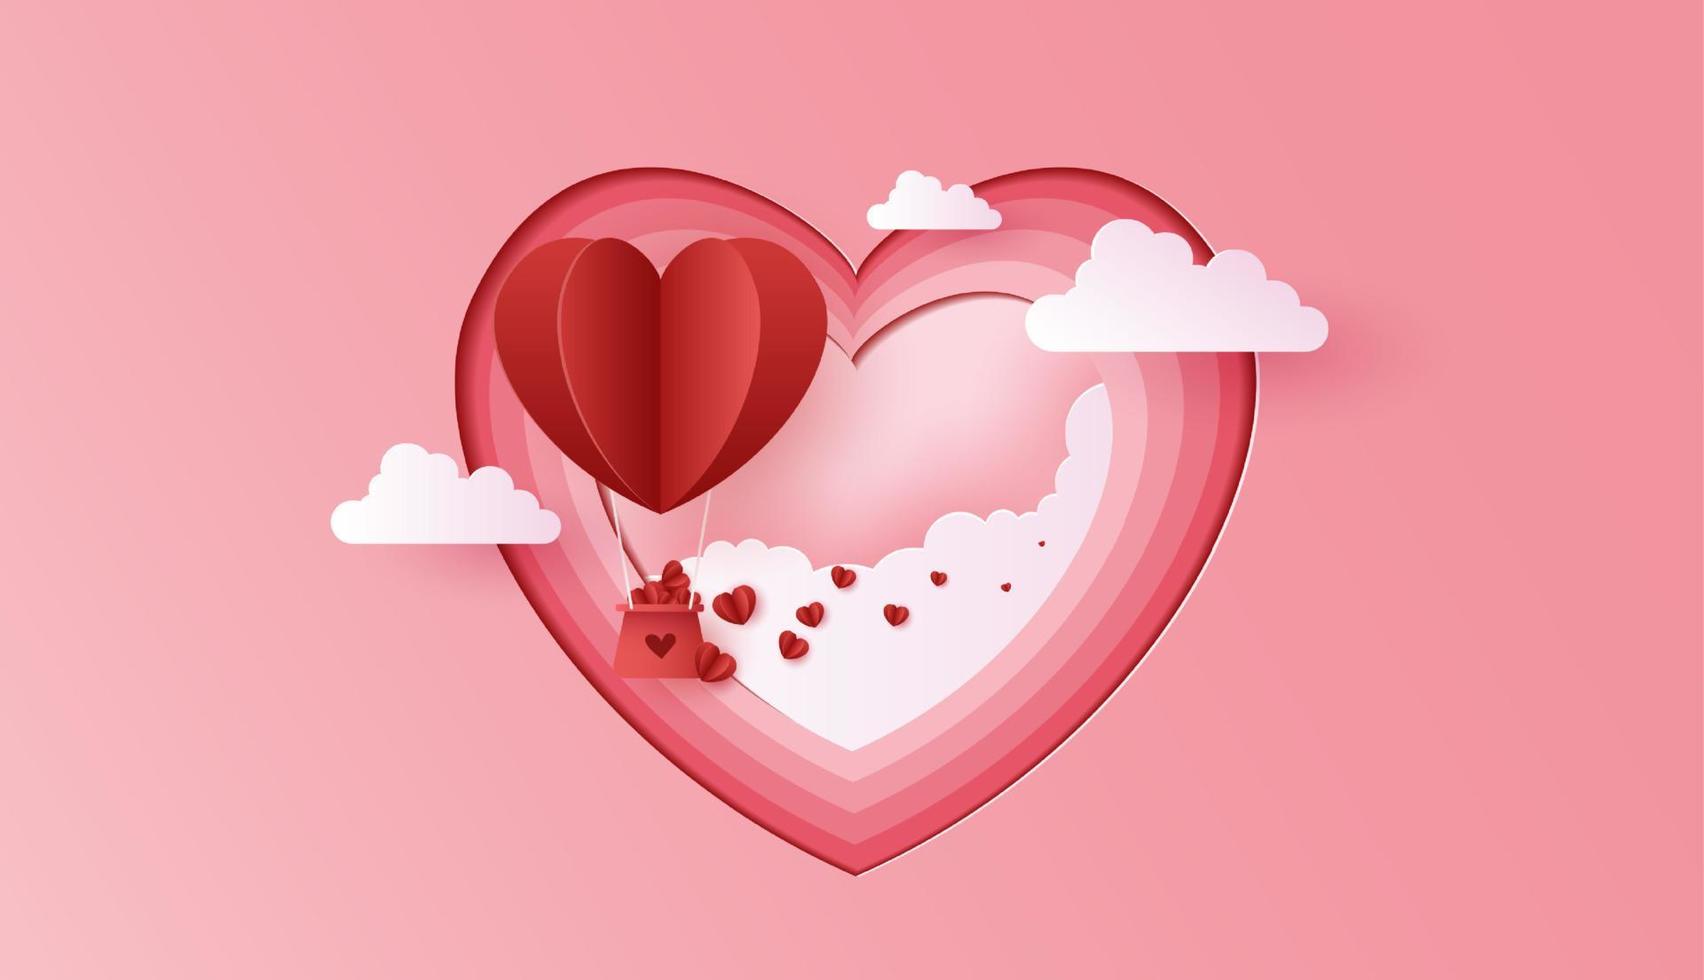 papperskonst av kärlek och alla hjärtans dag med pappershjärtaballong och presentförpackning flyter på den blå himlen. kan användas för tapeter, inbjudningar, affischer, banderoller. vektor design